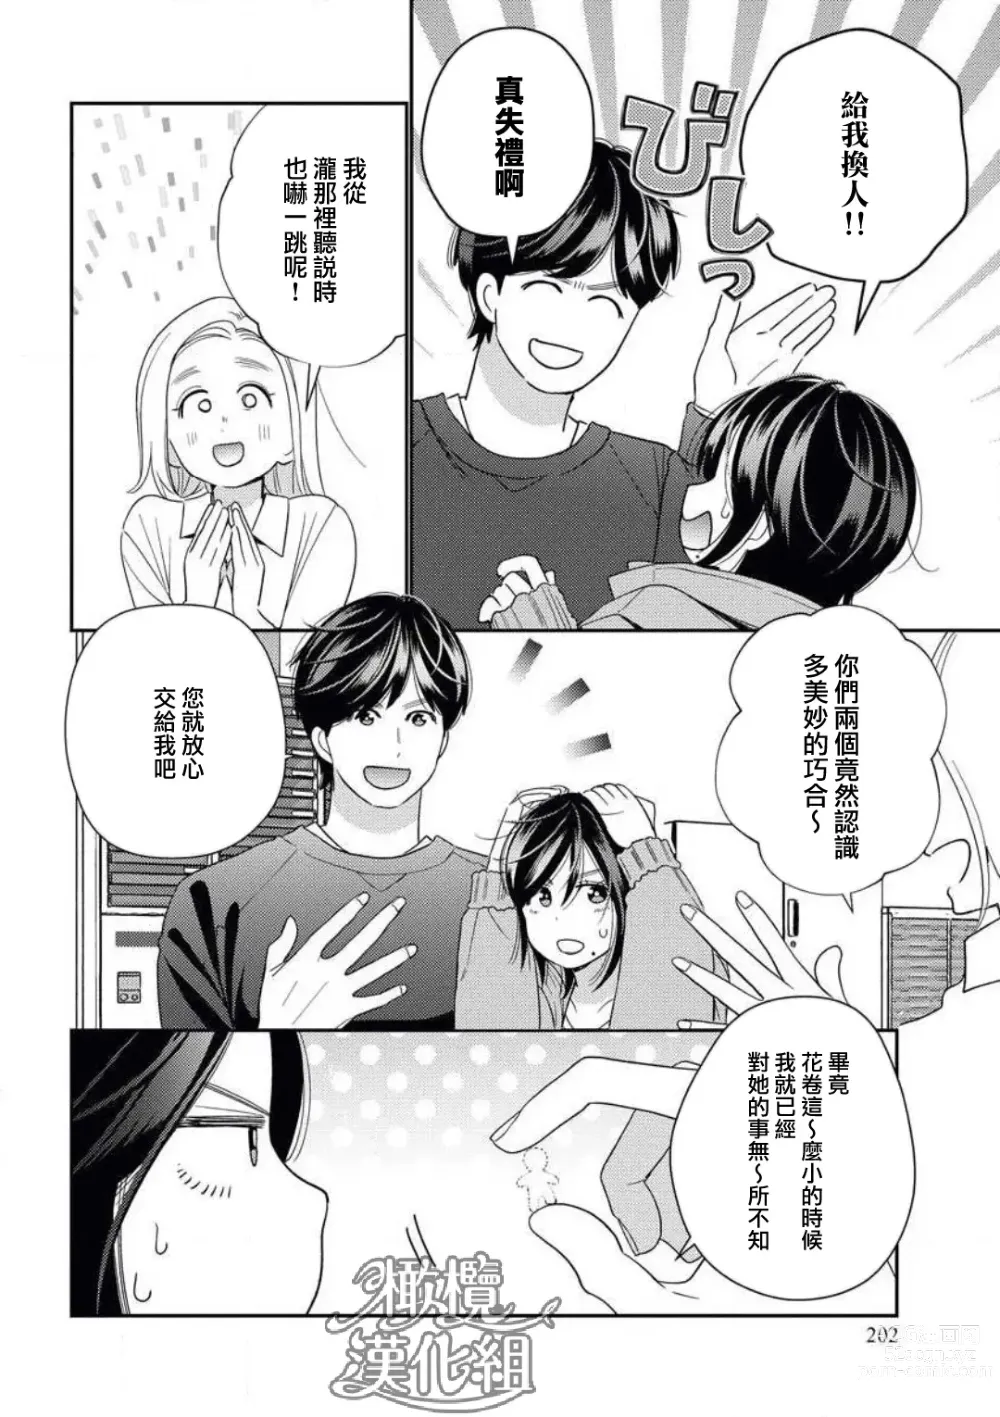 Page 4 of manga 青梅竹马难以攻陷被小黄话（※正当工作需求）玩弄一番